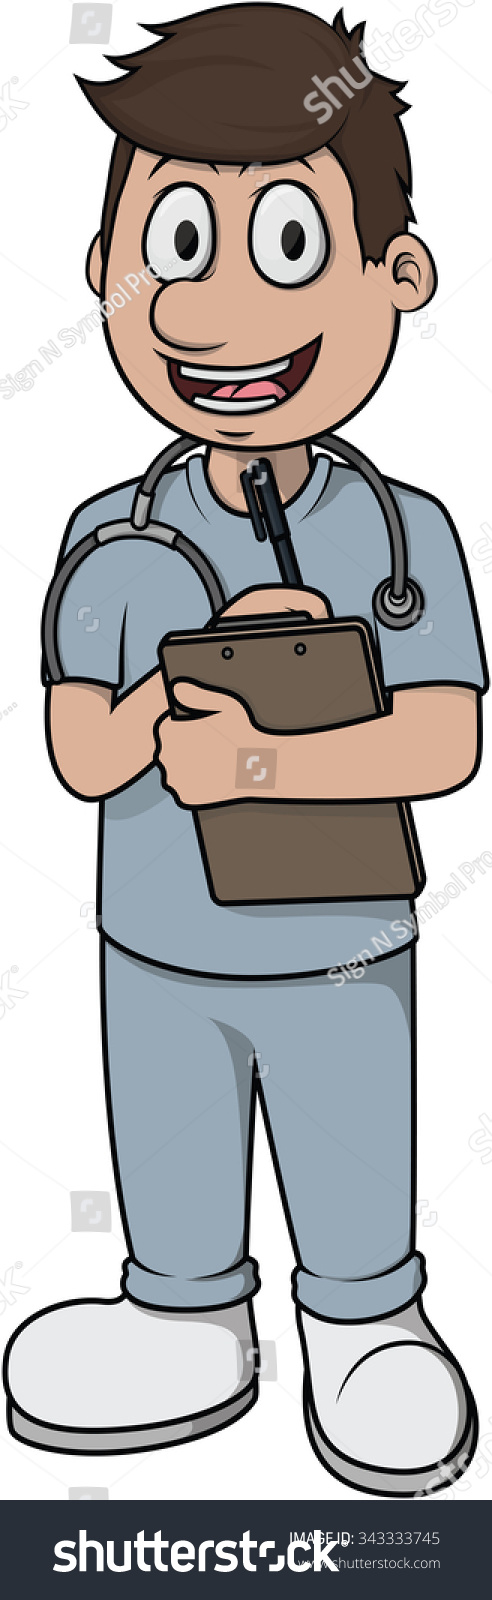 Nurse Man Vector Cartoon Illustration Design - 343333745 : Shutterstock